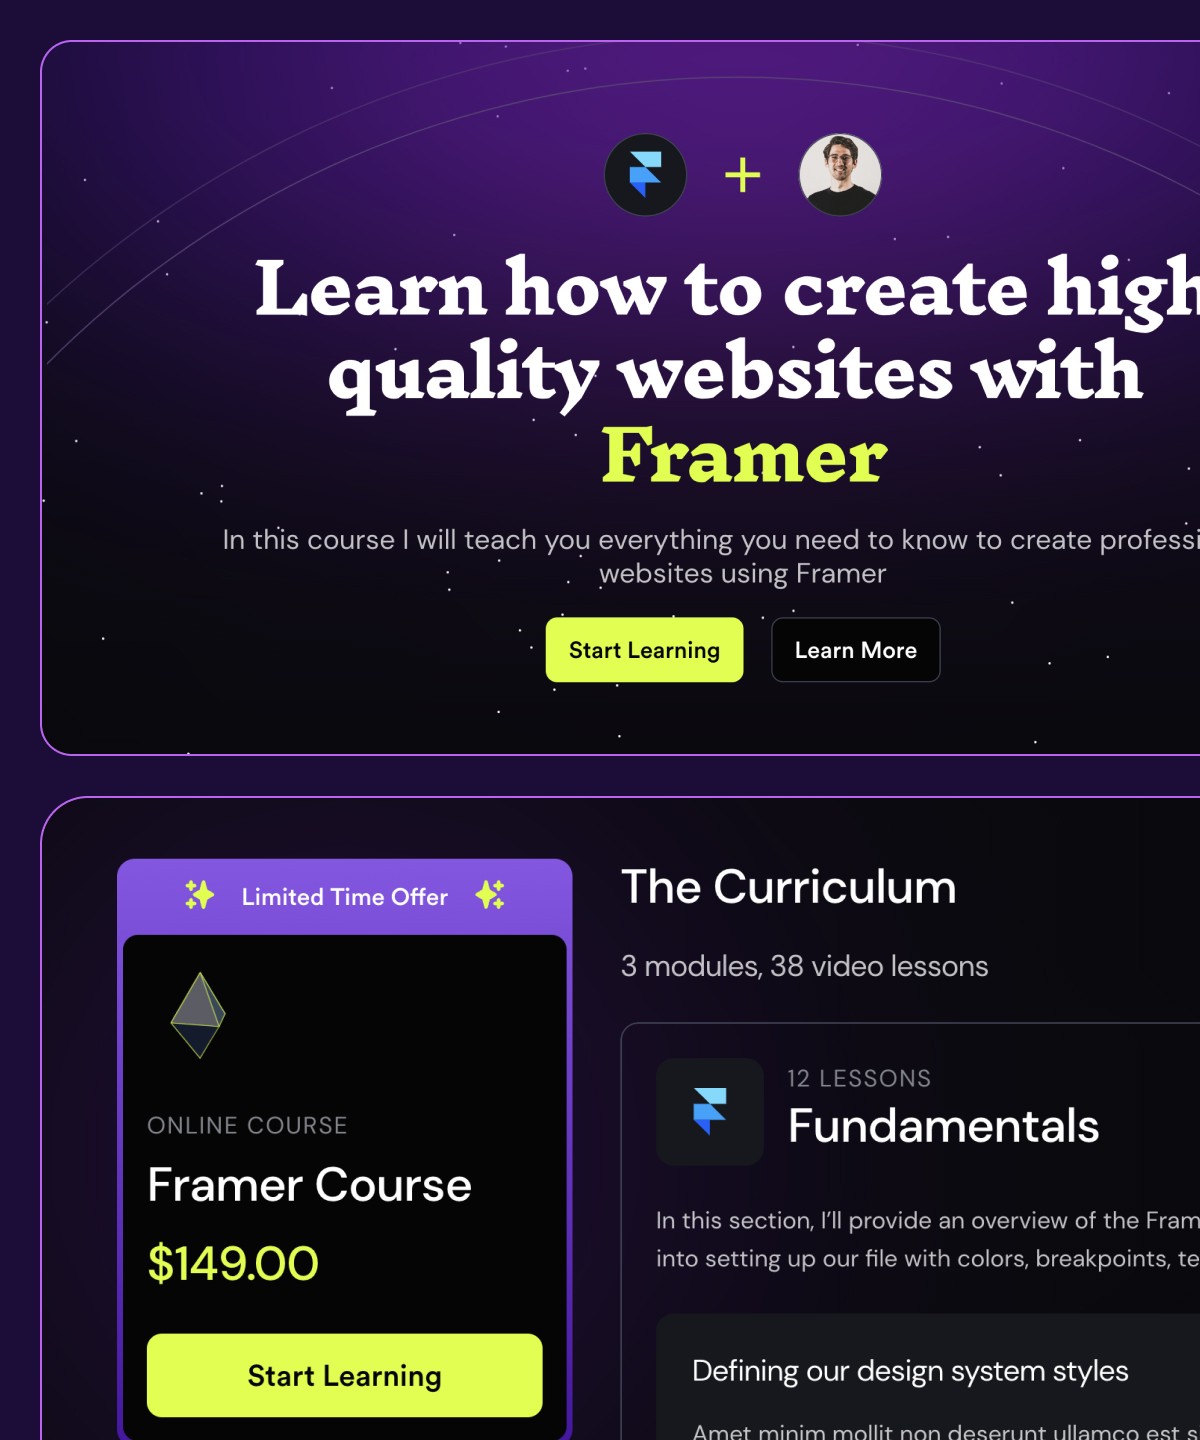 Framer Course